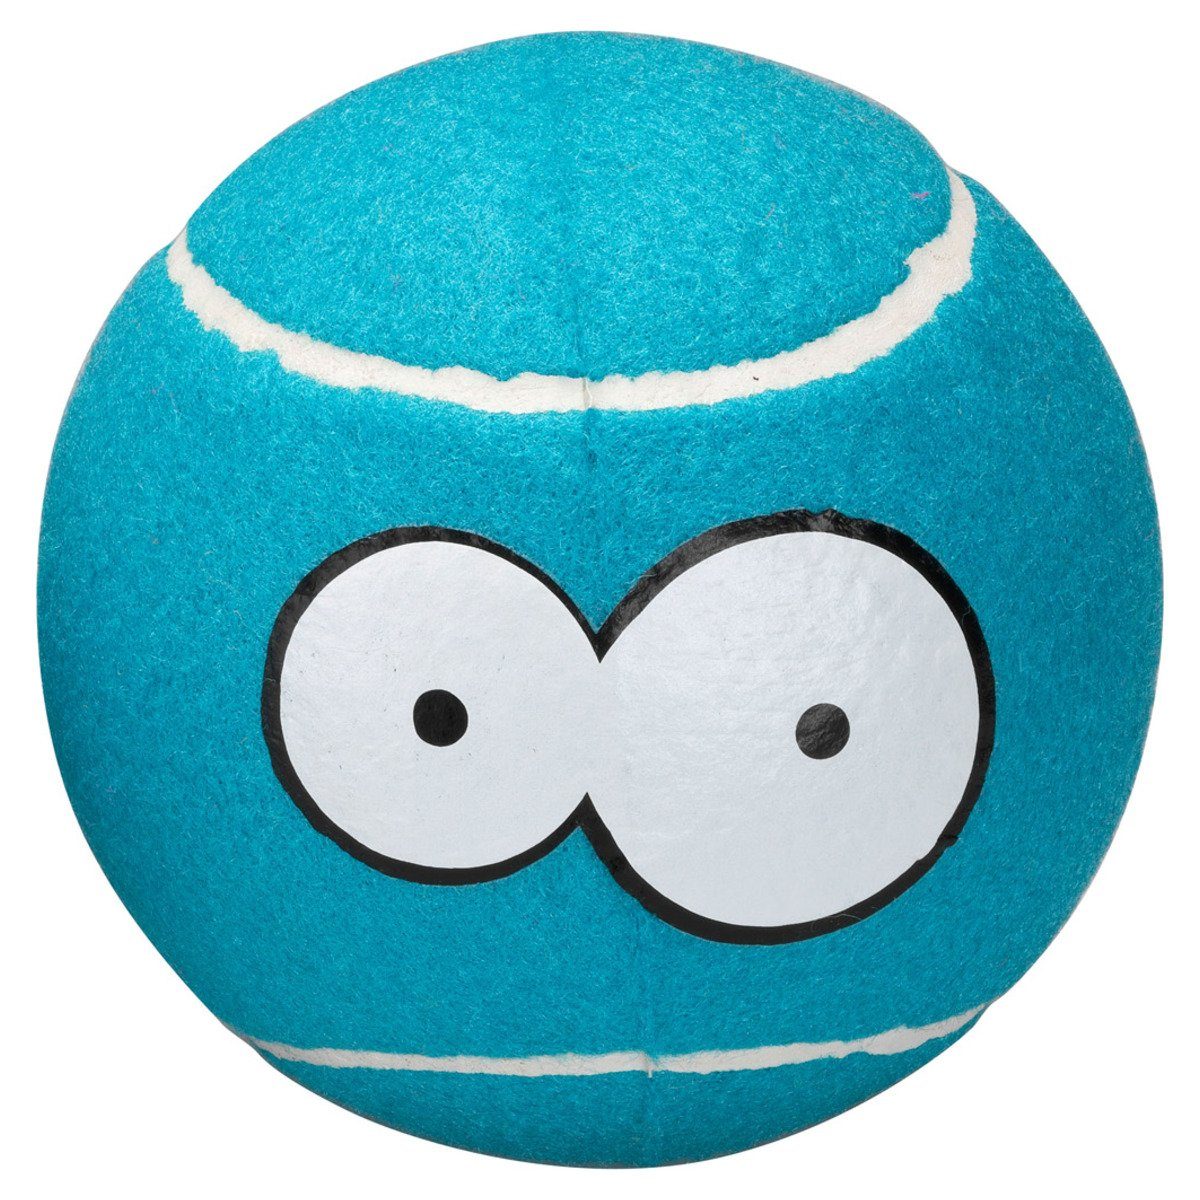 Coockoo Spielball Hundespielzeug Tennisball blau | Spielbälle